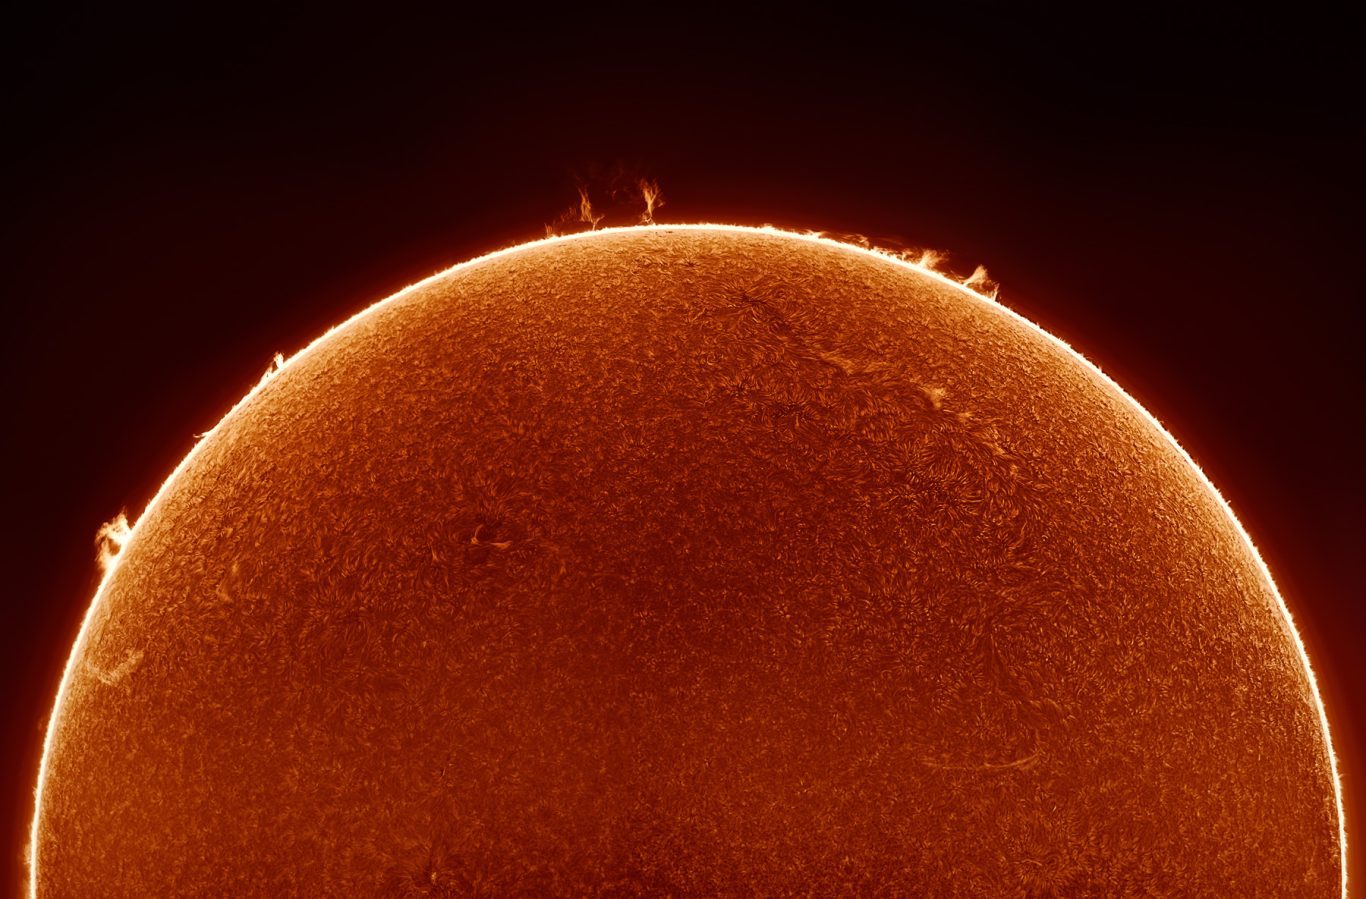 El Sol en H-Alpha. Mediante el uso de filtros especiales es posible fotografiar la cromosfera, la capa más baja de la atmósfera solar, y observar filamentos, manchas y protuberancias solares. Foto: Franco Meconi.